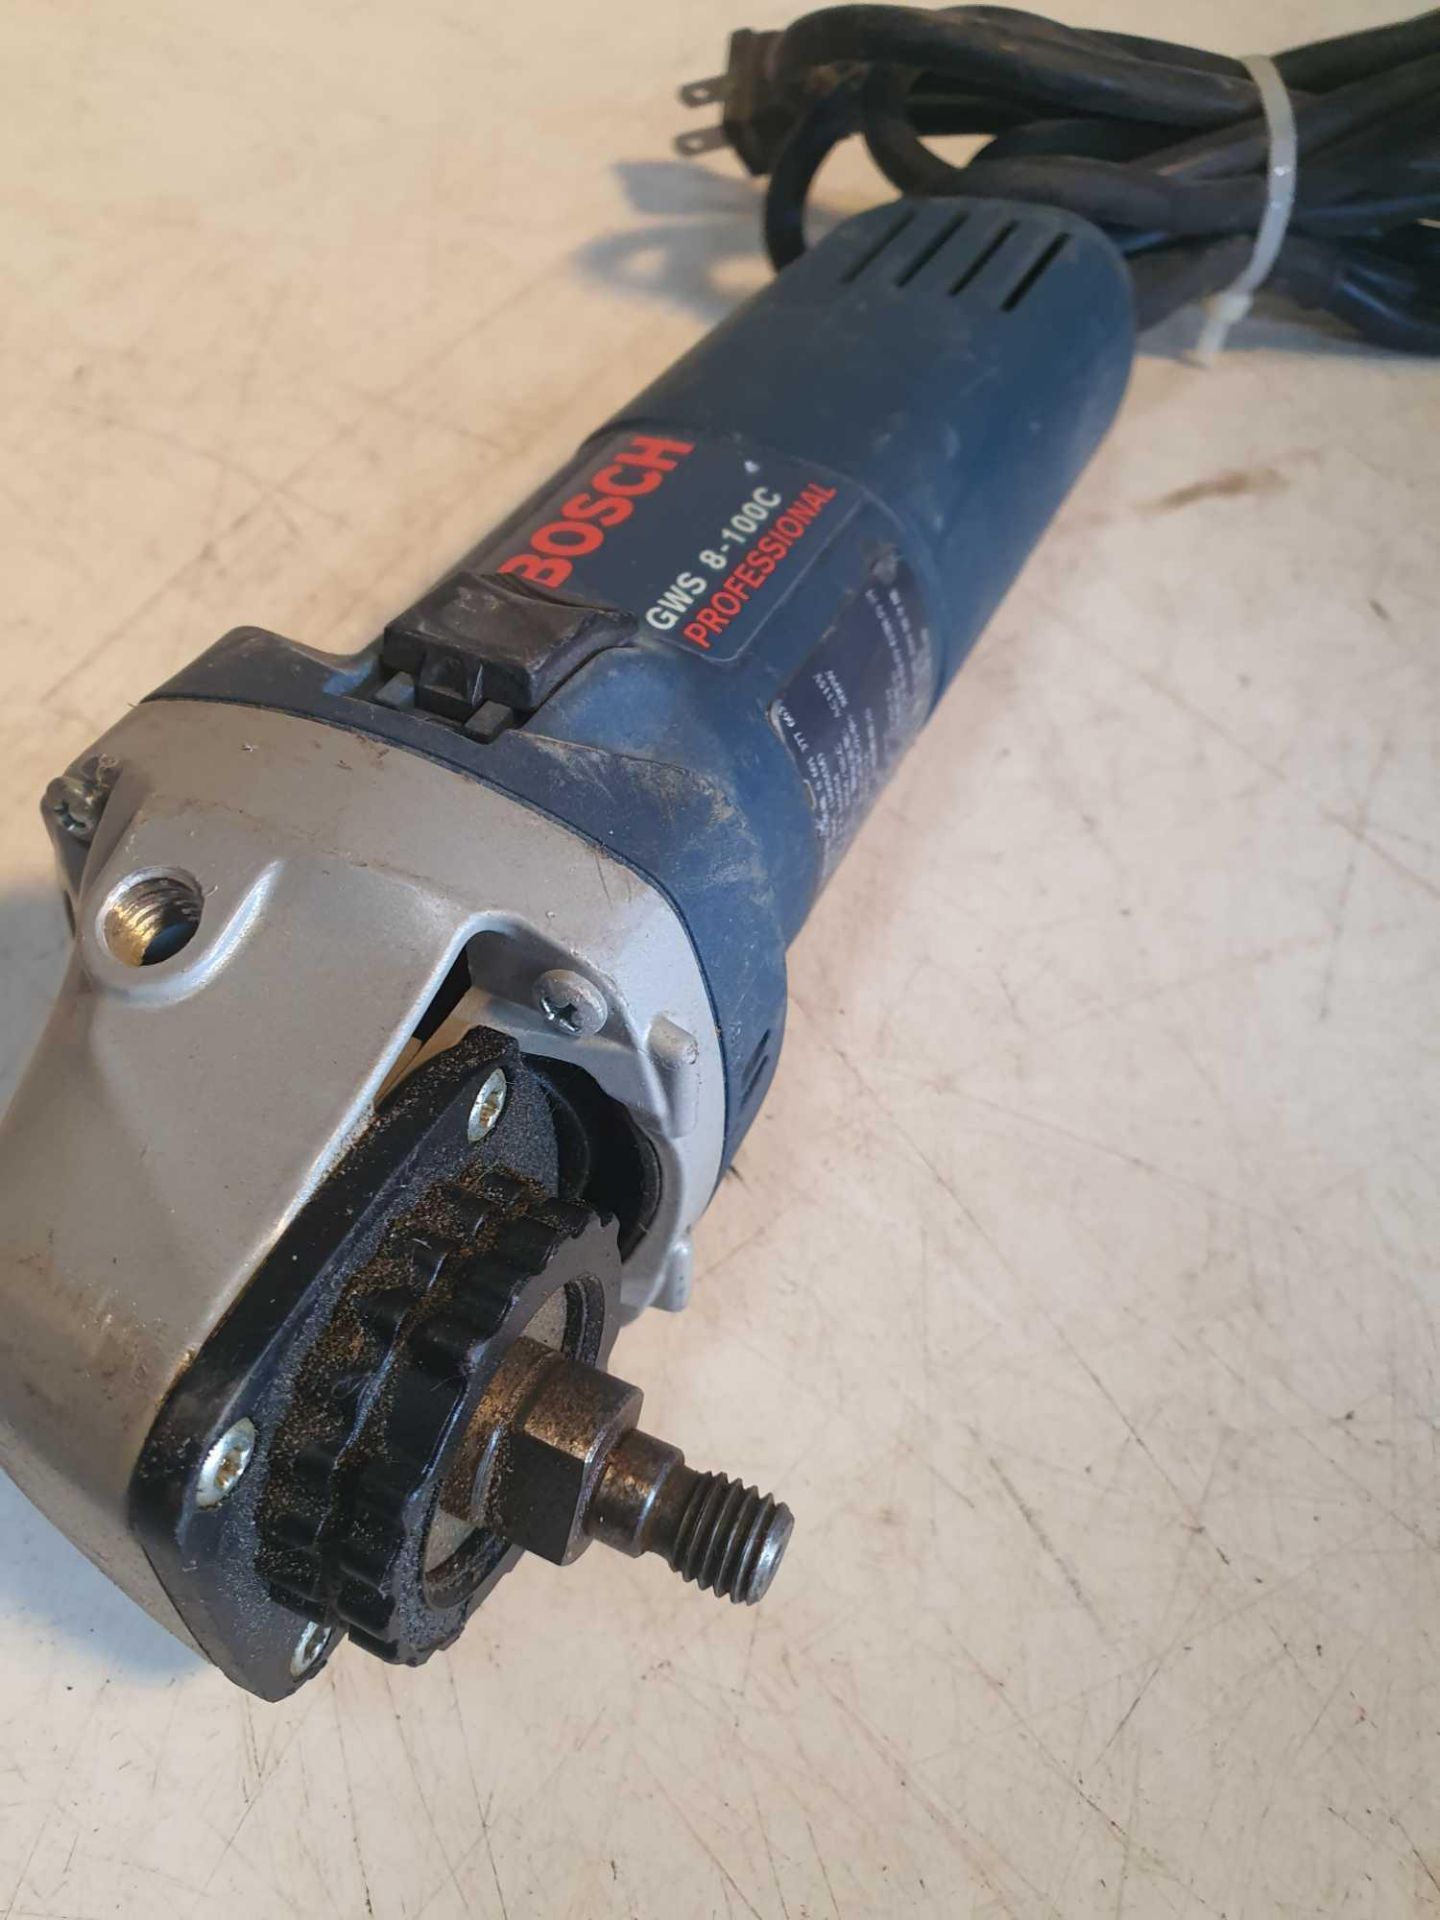 Bosch 110v grinder - Image 2 of 2